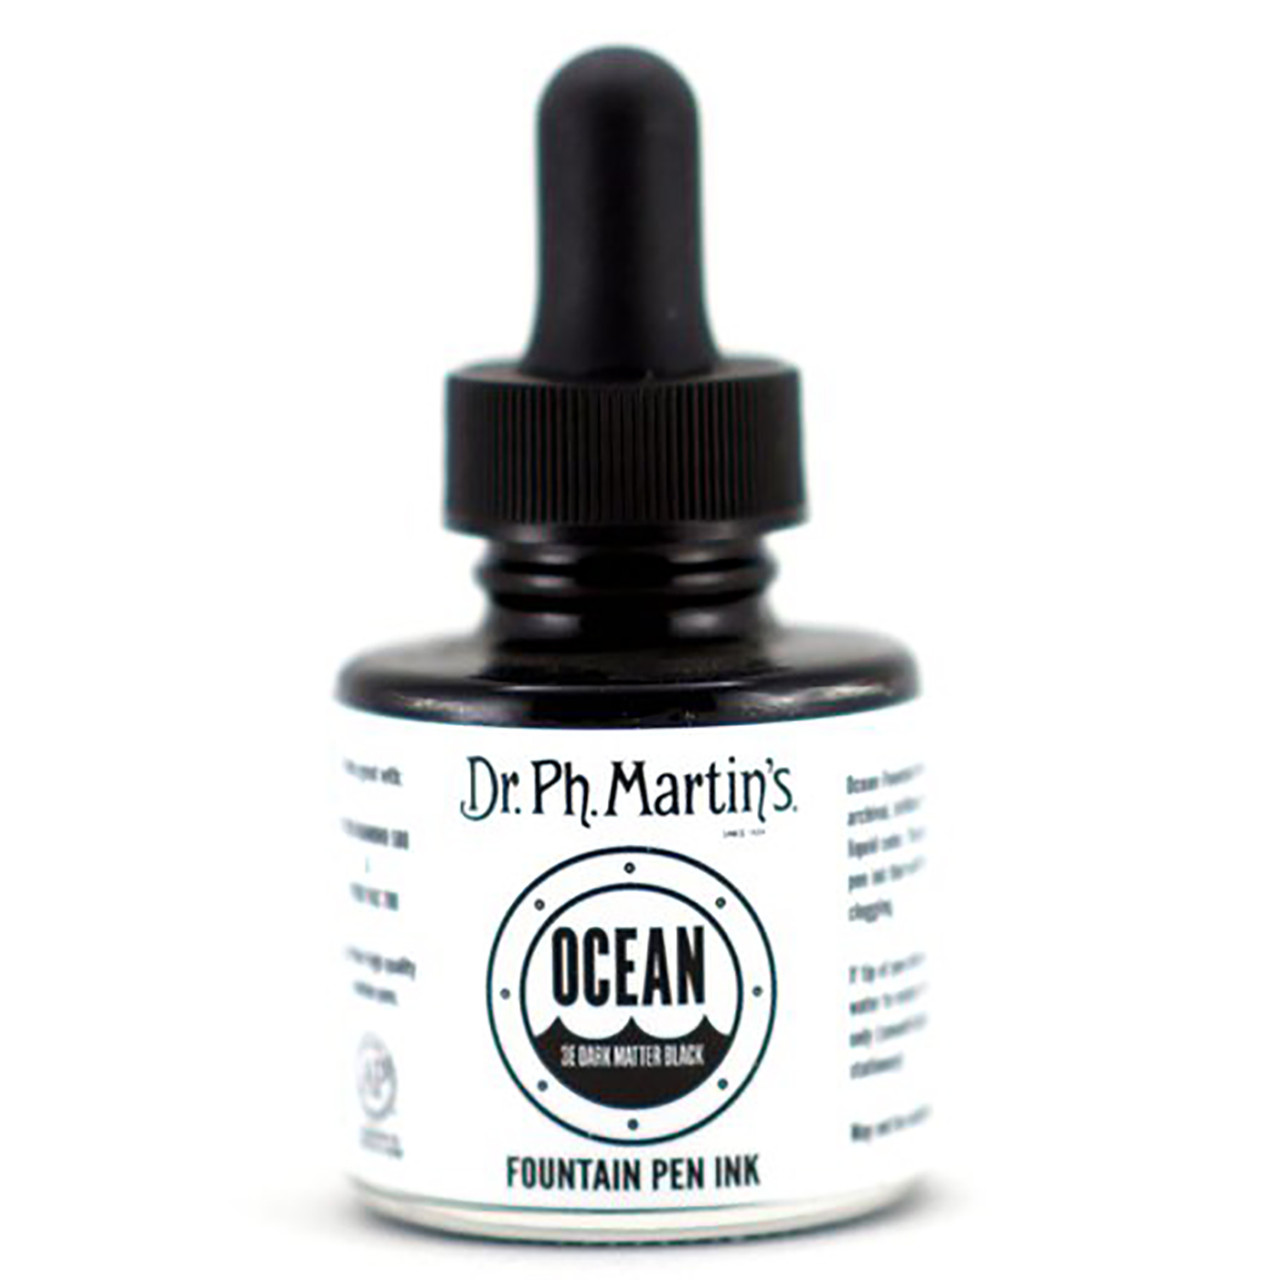 Ocean Fountain Pen Ink, 1.0 oz – Dr. Ph. Martin's